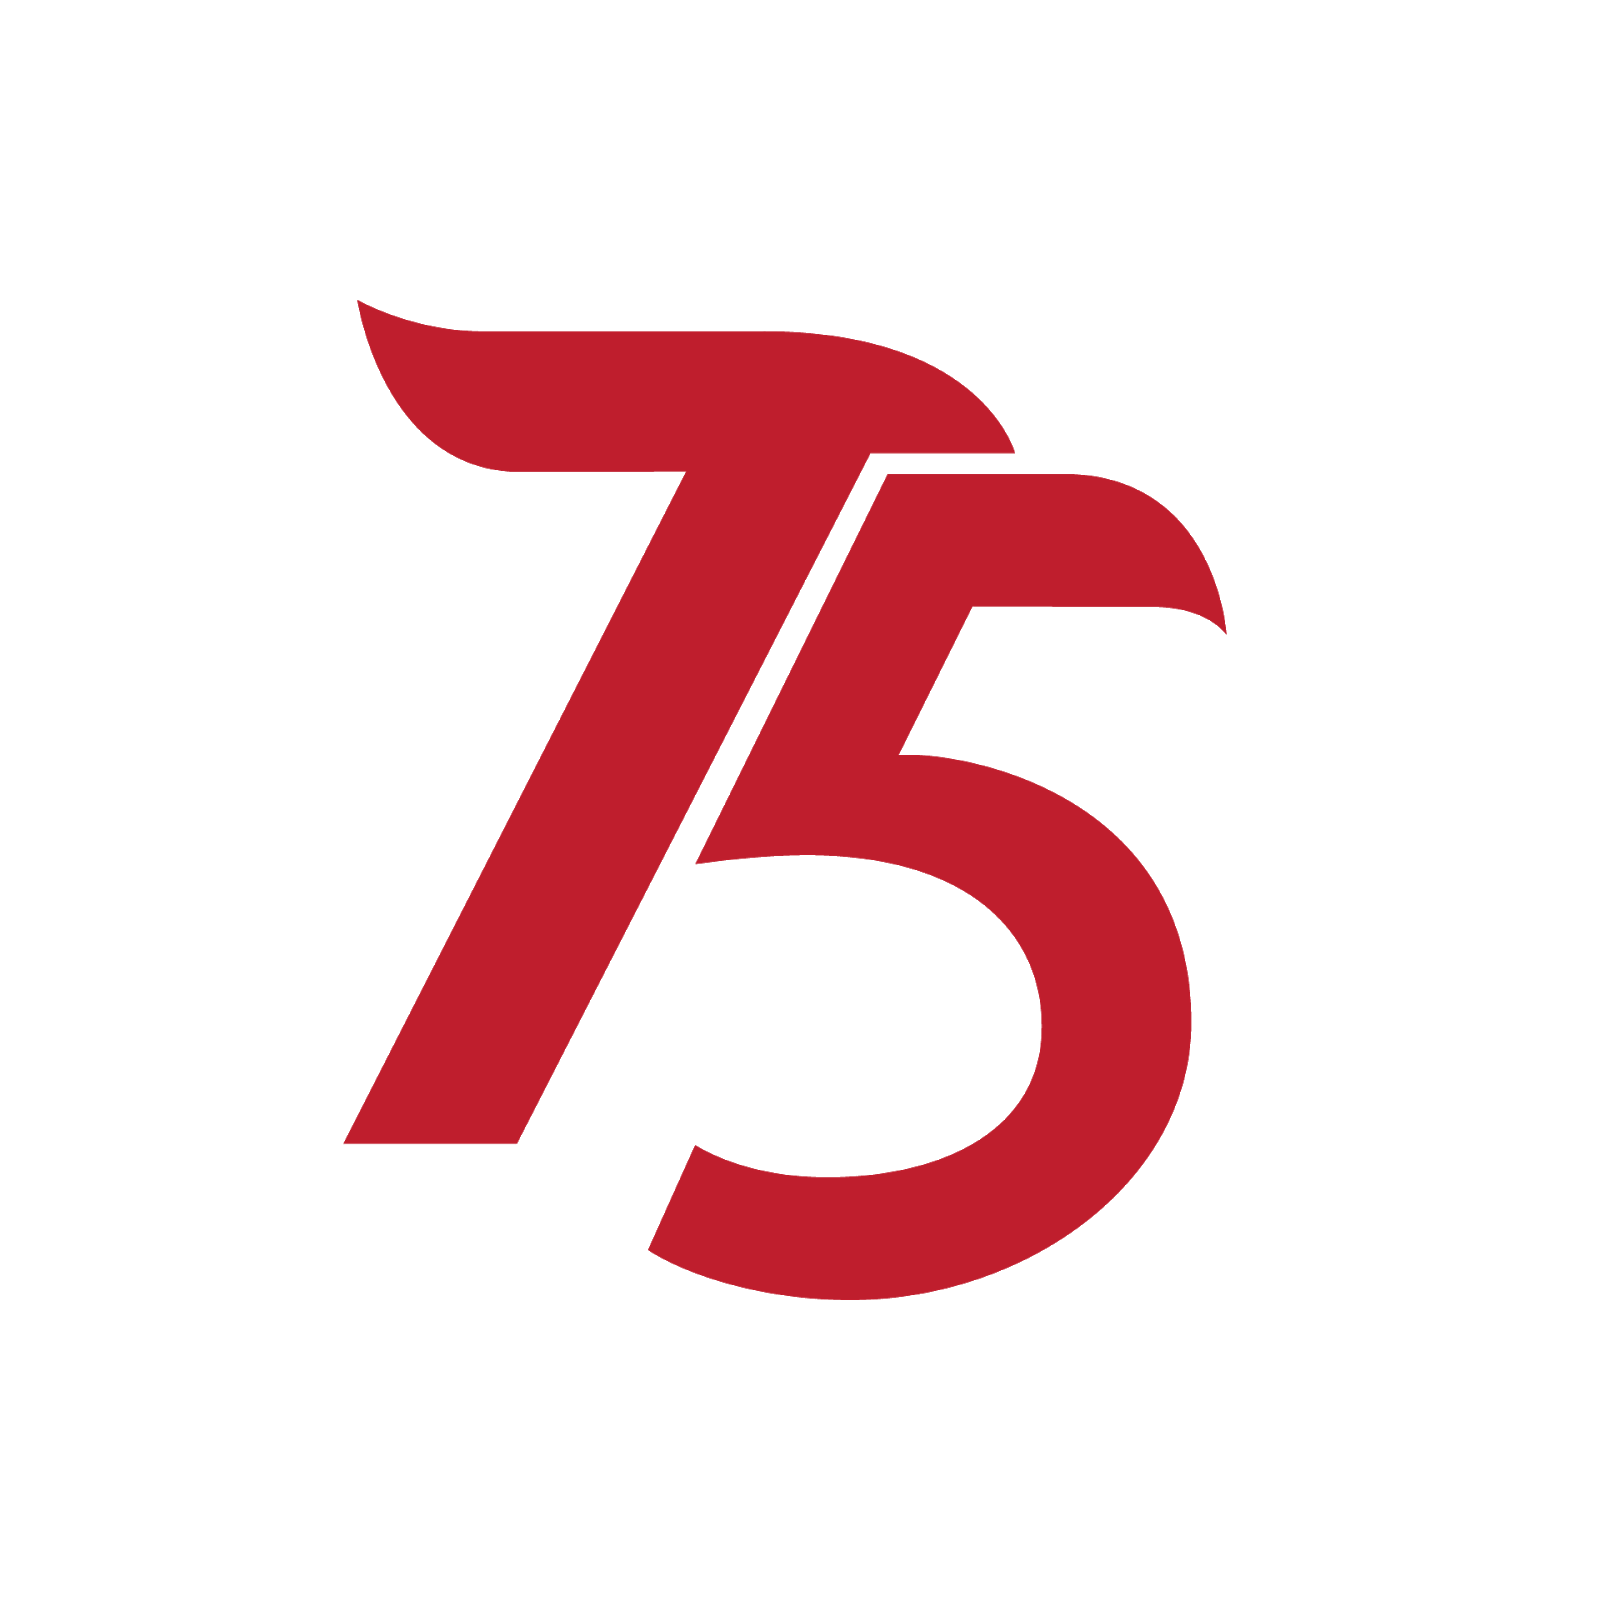  Logo  Hut Kemerdekaan Ri Ke 75  Kumpulan Contoh Surat dan 